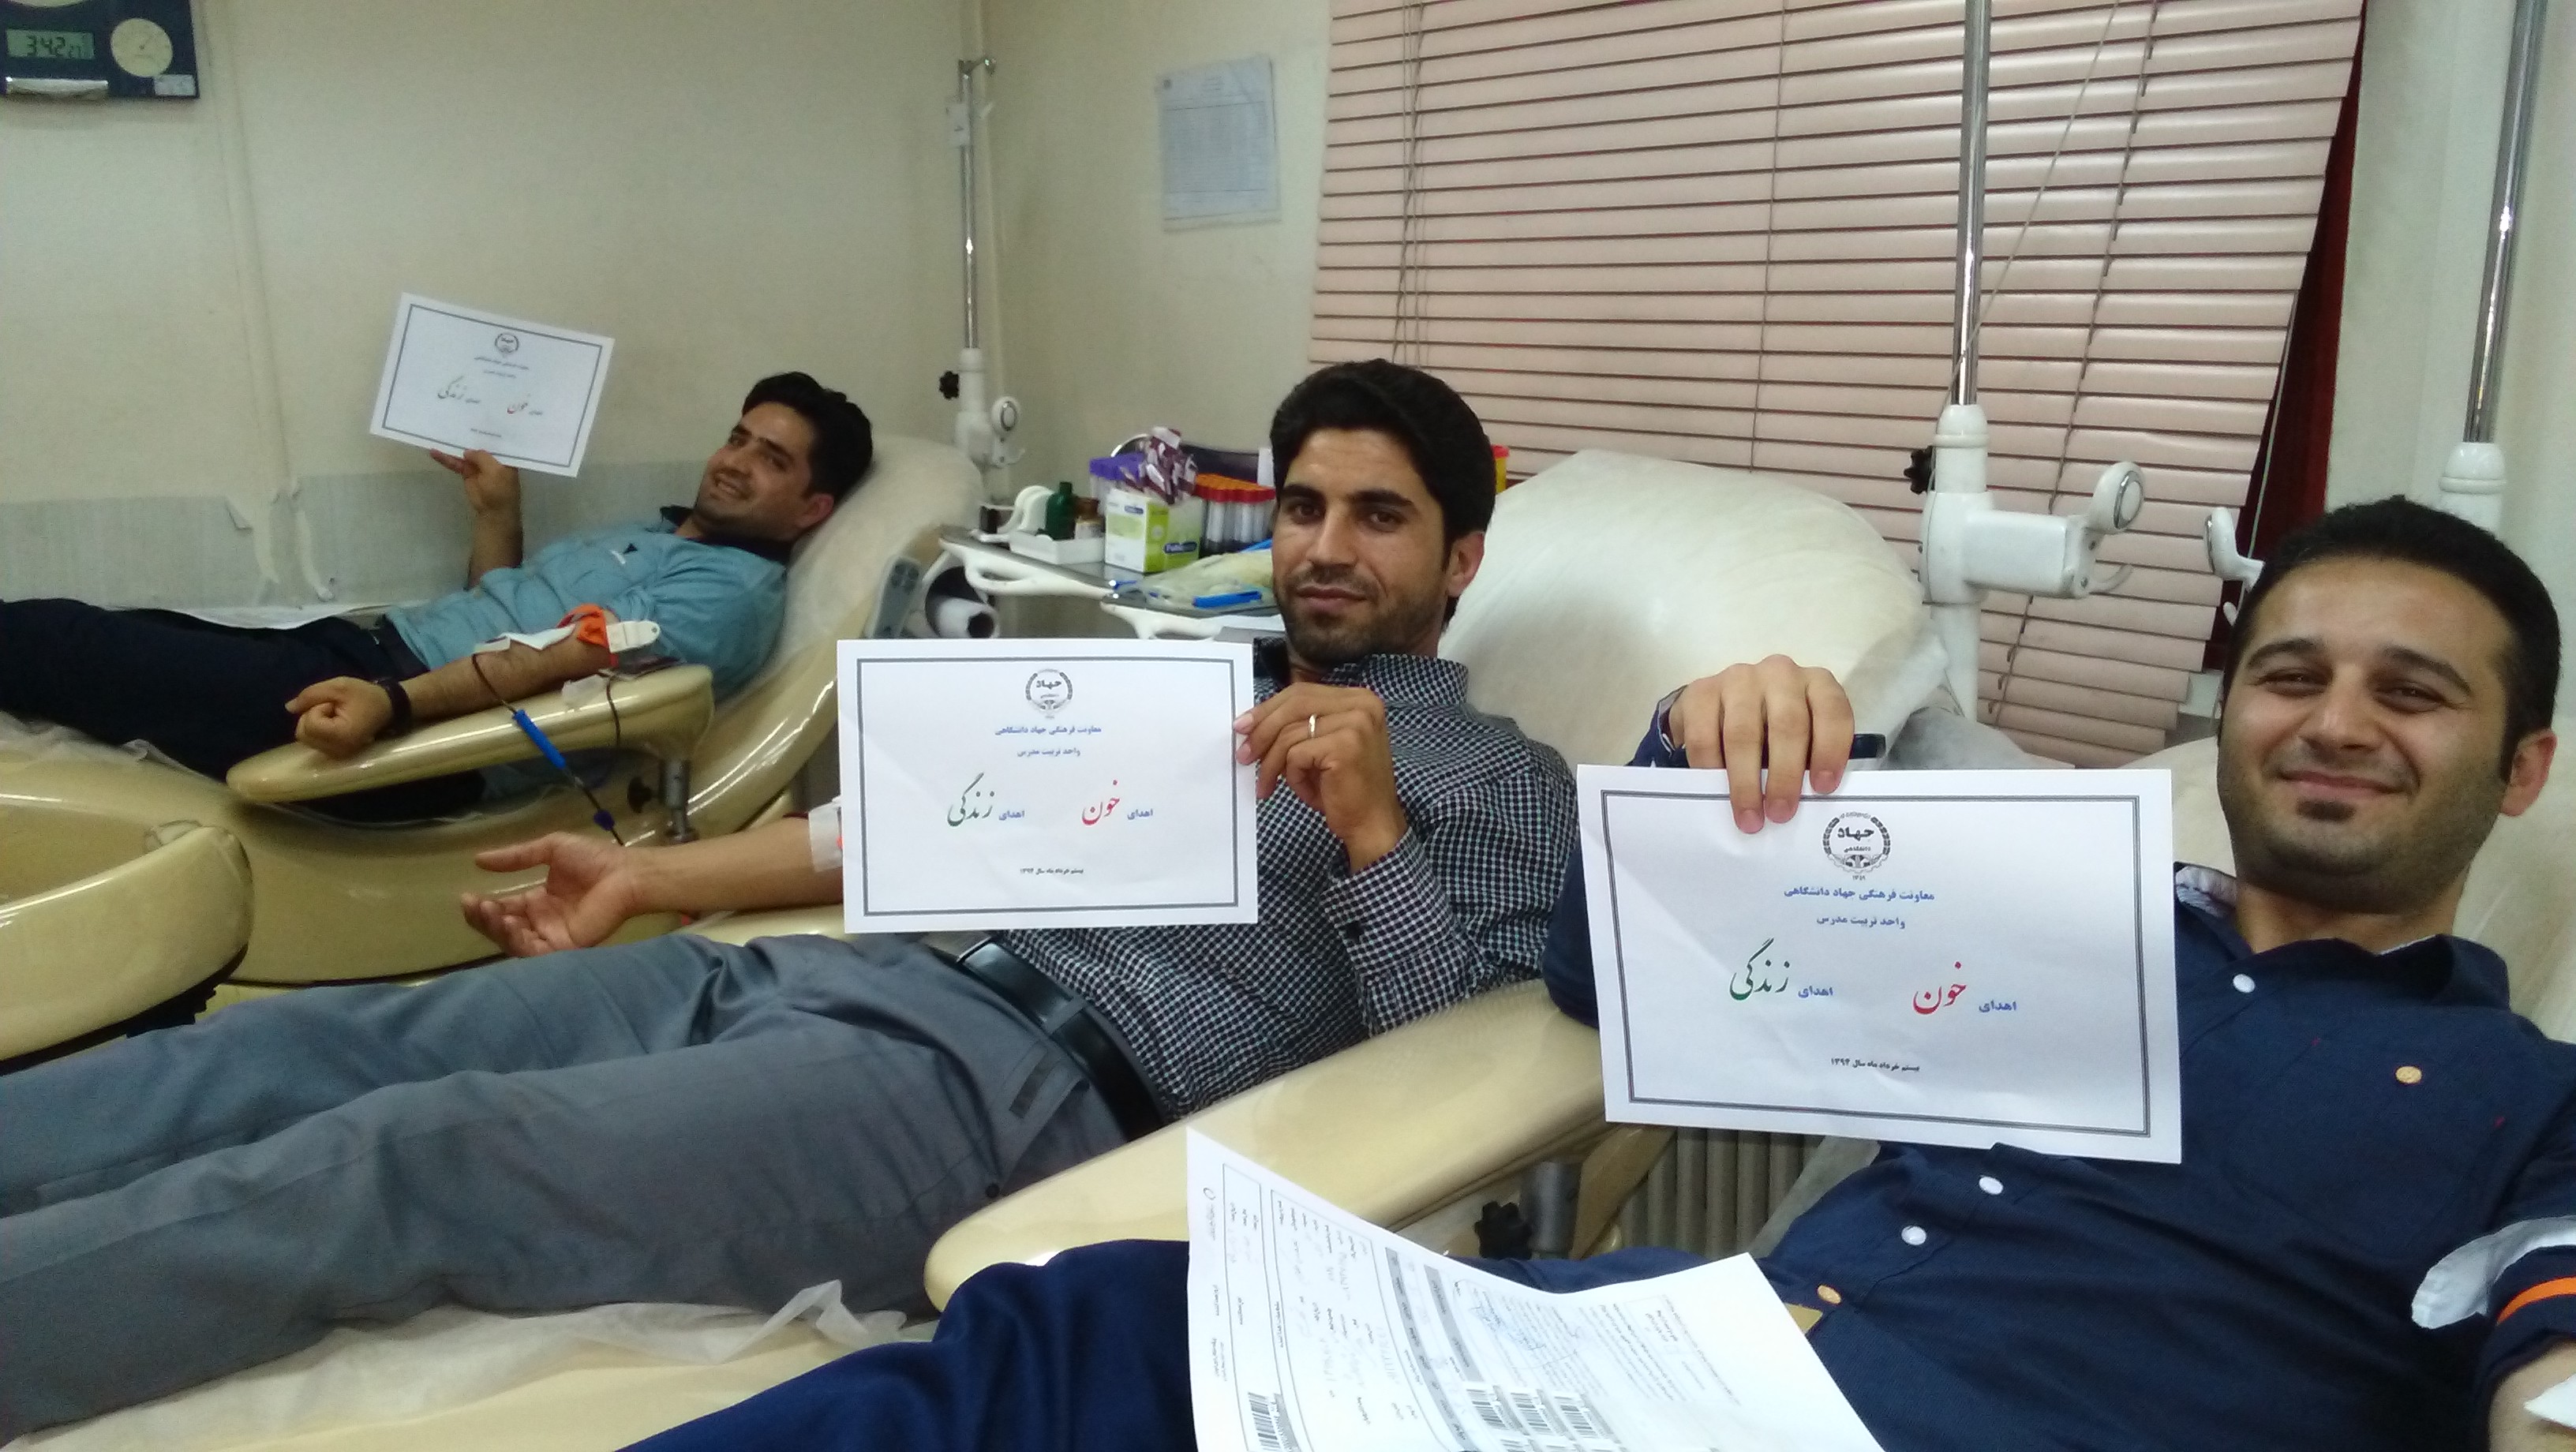 اهدای خون توسط تعدادی از همکاران جهاد دانشگاهی واحد تربیت مدرس در هفته اهدای خون